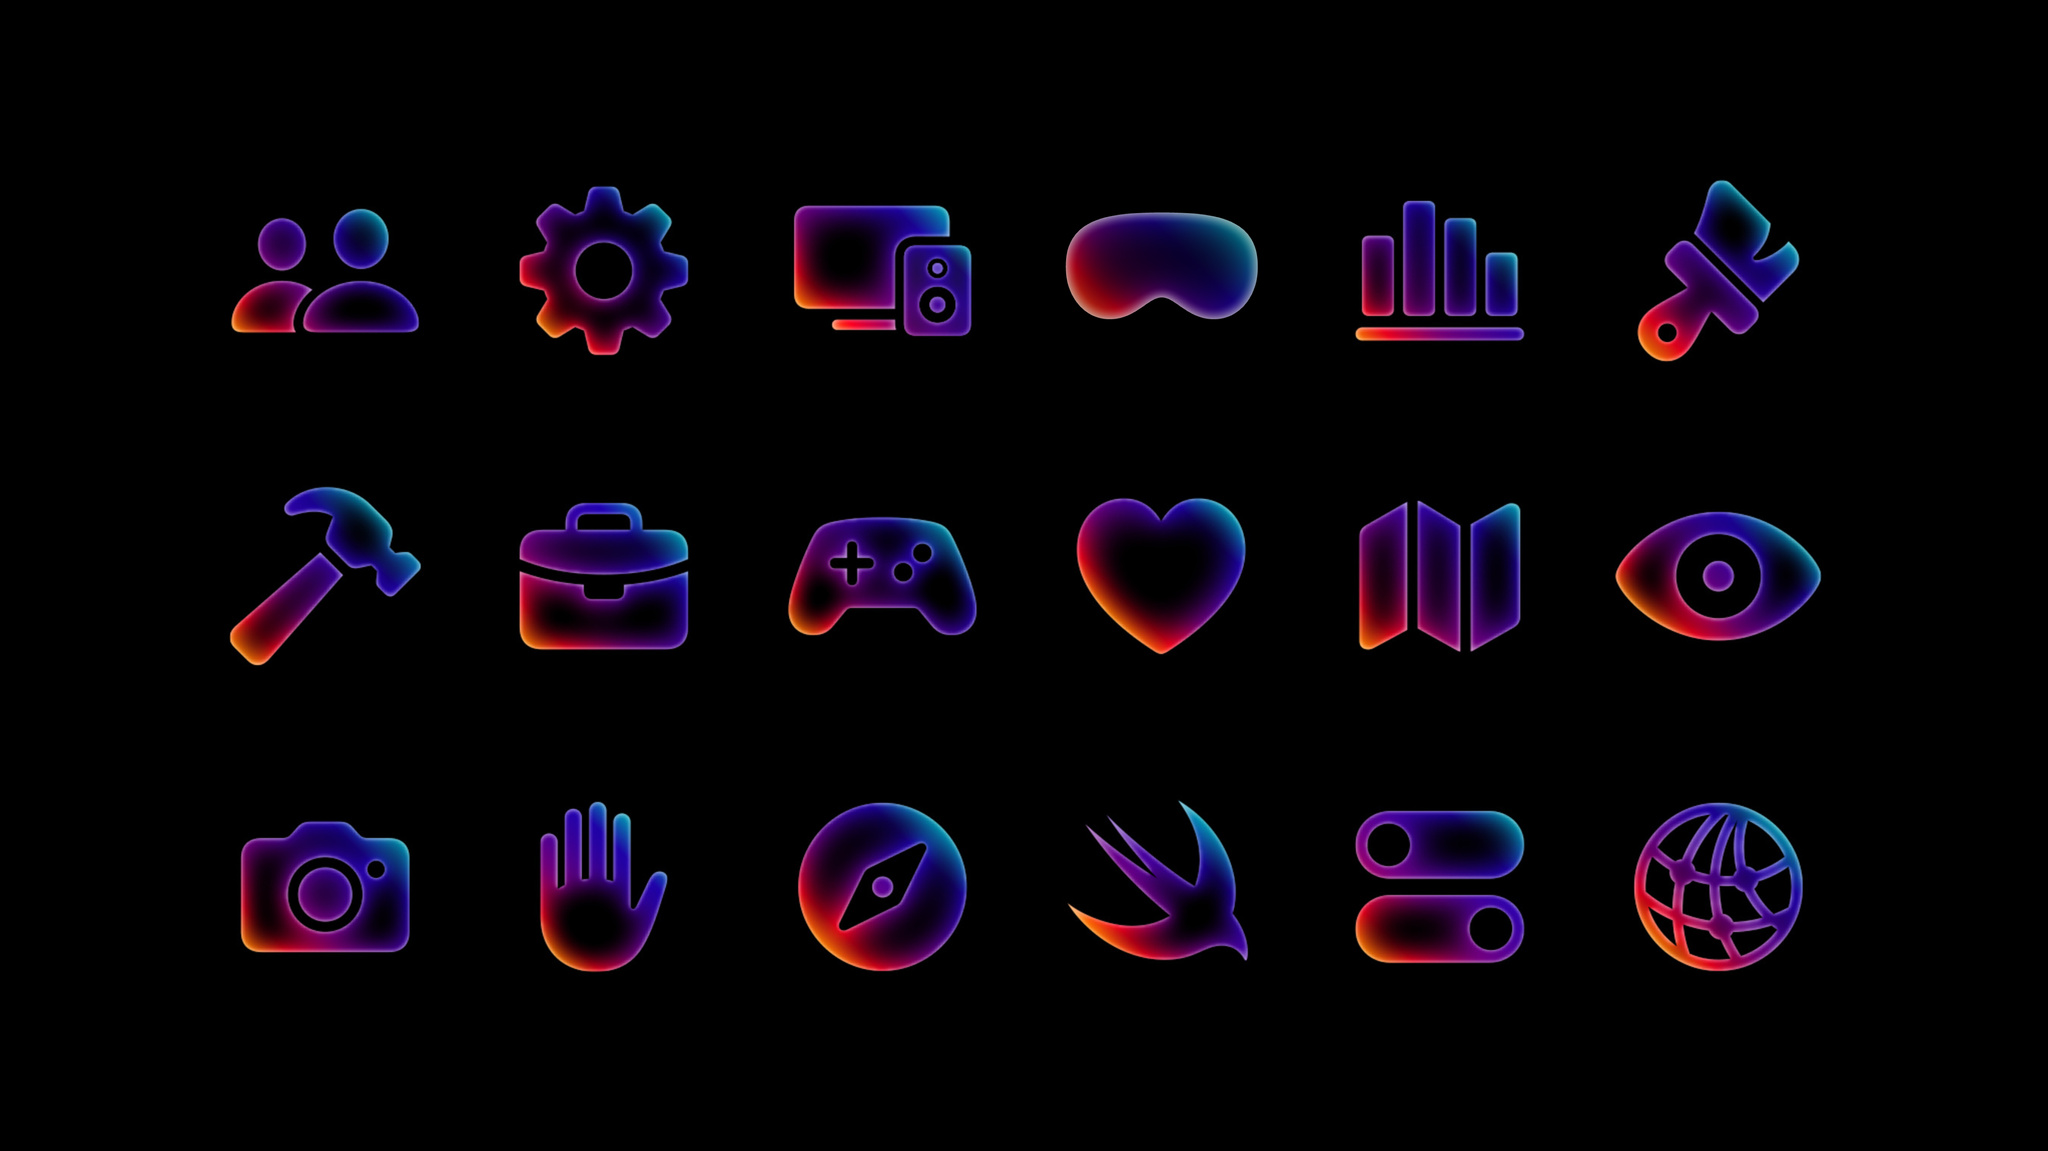 代表开发主题的彩虹色图标在黑色背景上排列成三行